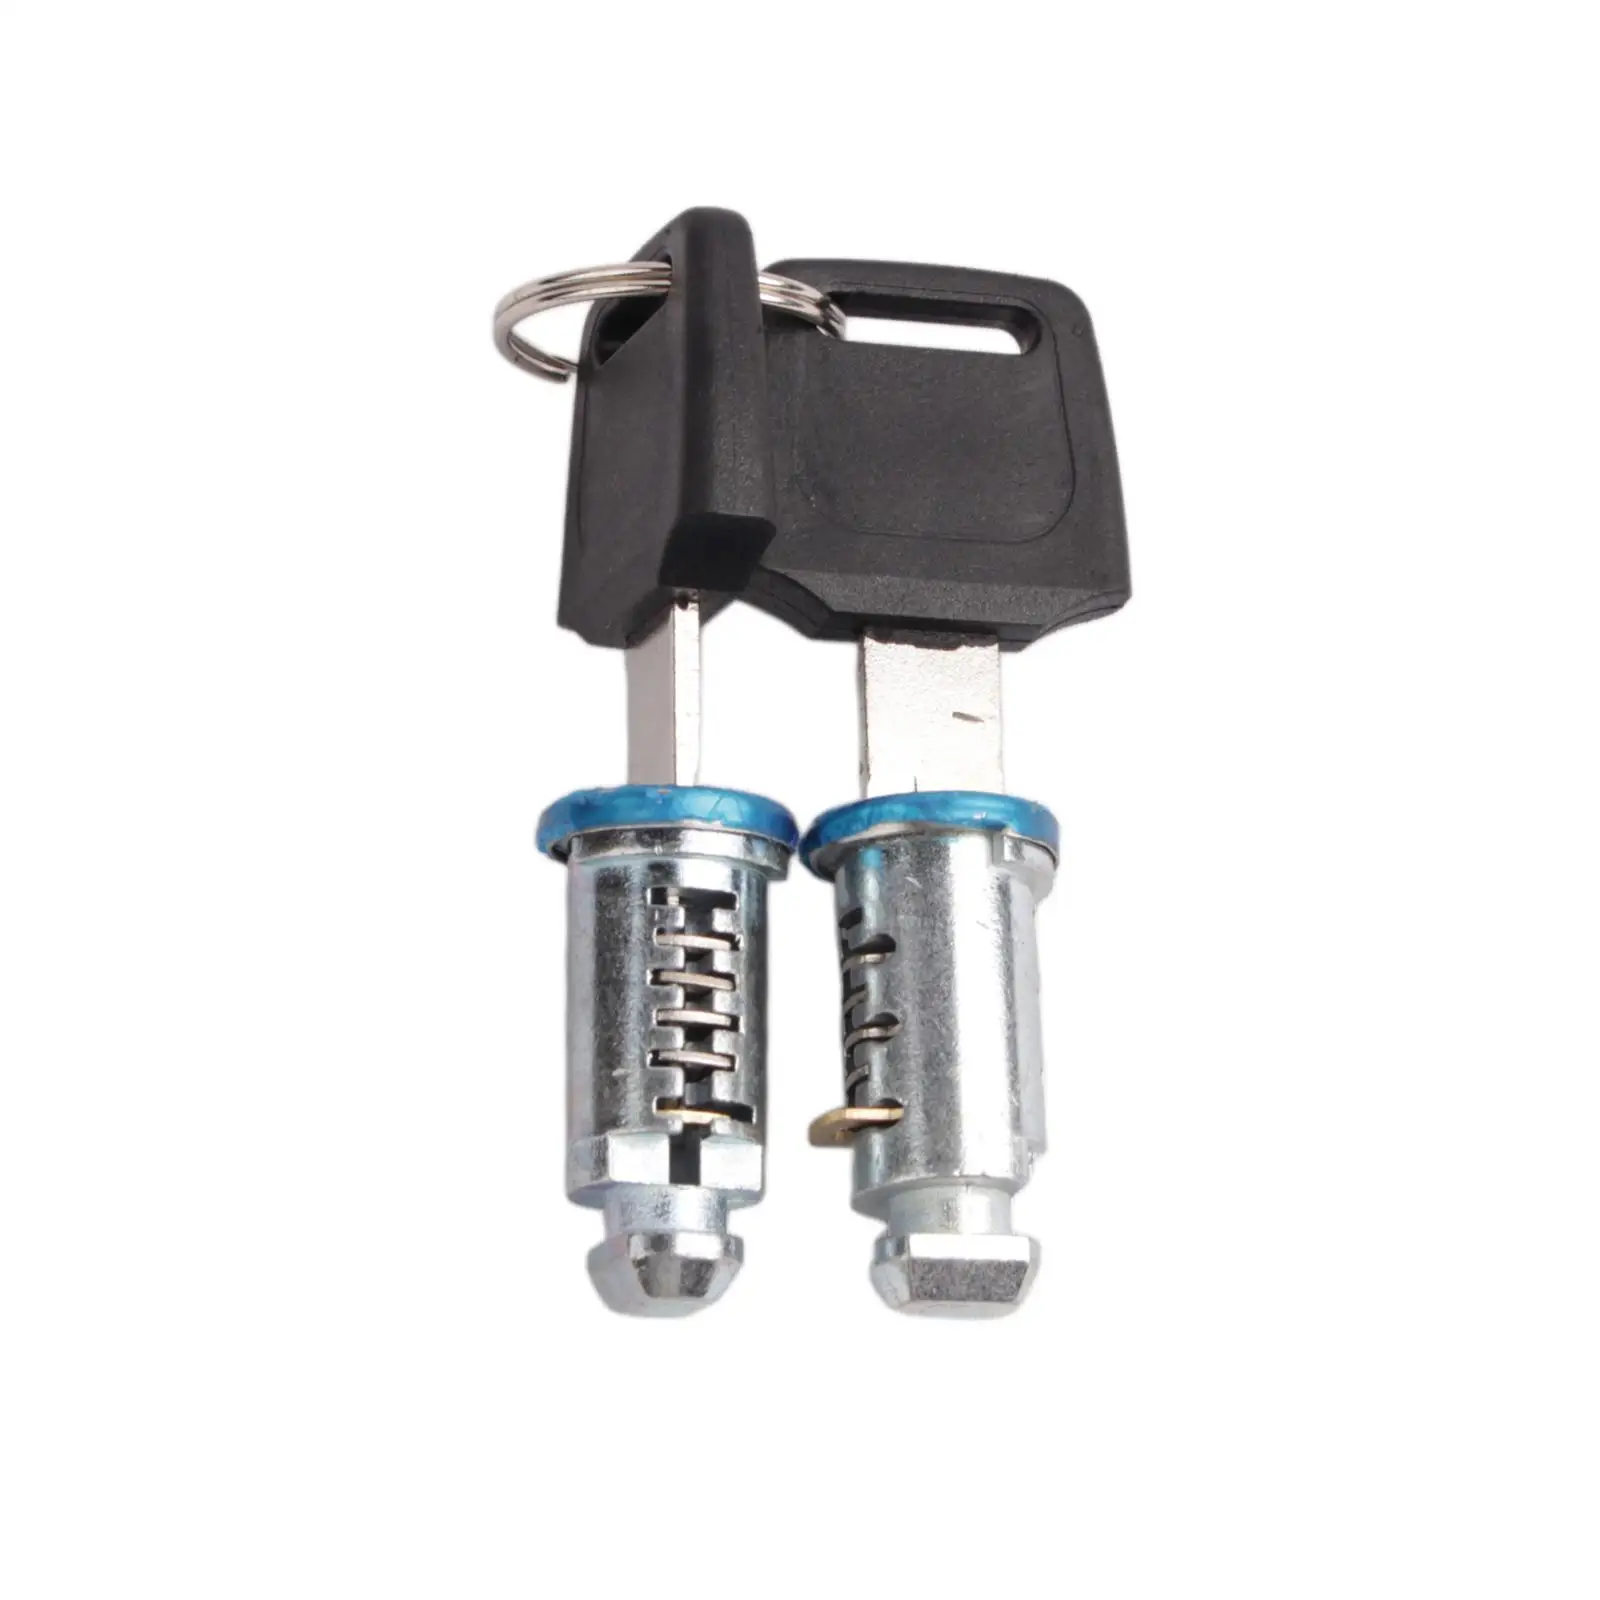 Roof Rack Locks & Keys Car Rack Locks Parts Professional SUV Kit Accessories